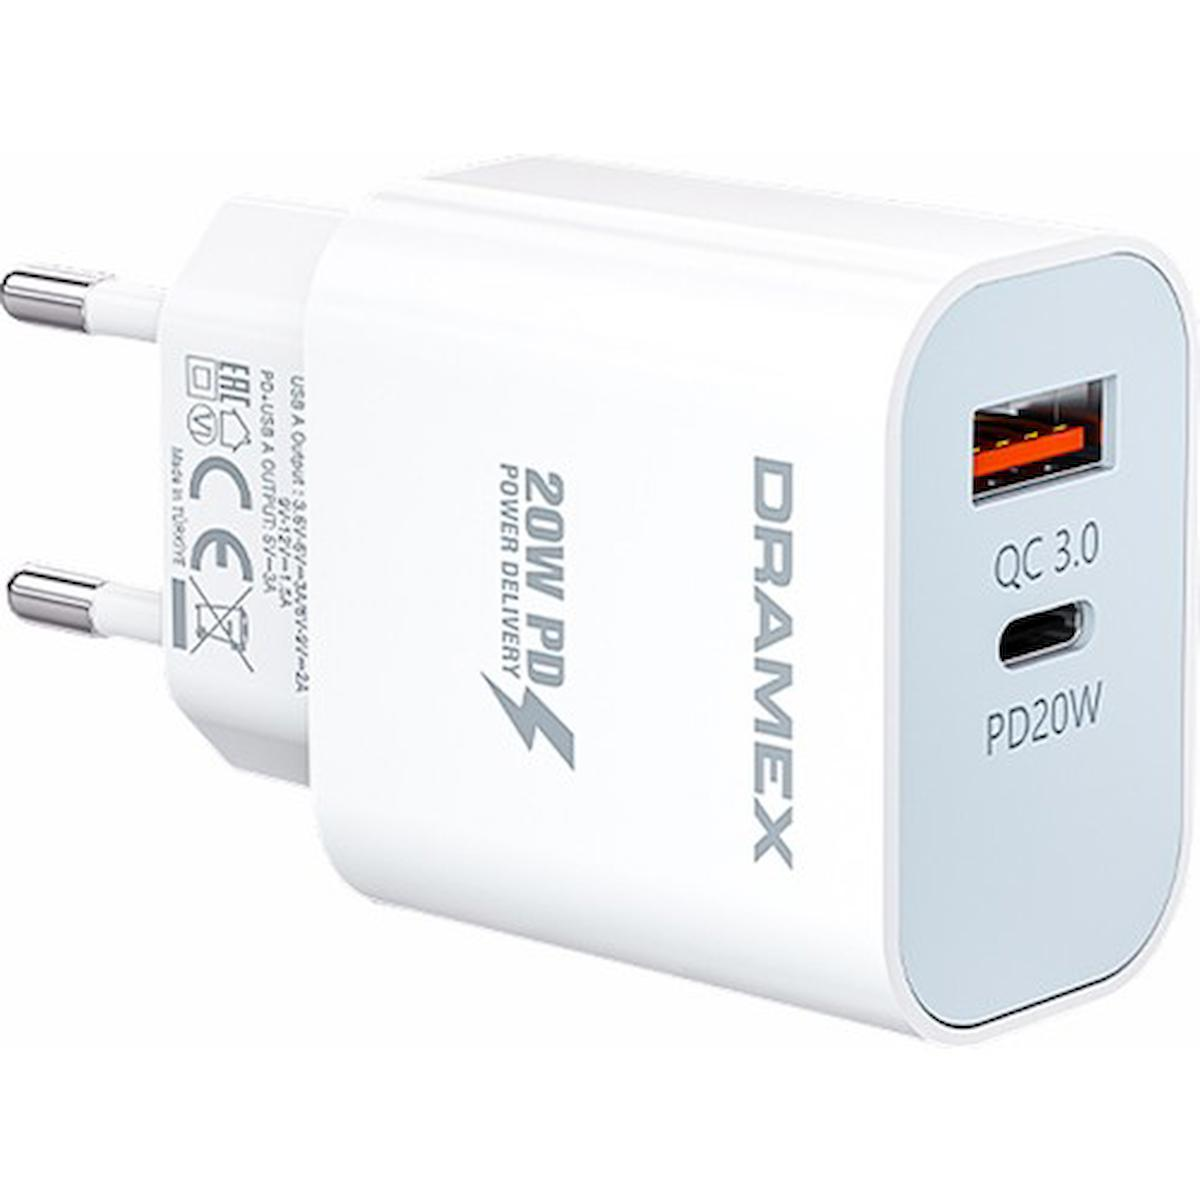 Dramex Dpq20b Universal USB Kablolu 20 W Hızlı Şarj Aleti Beyaz